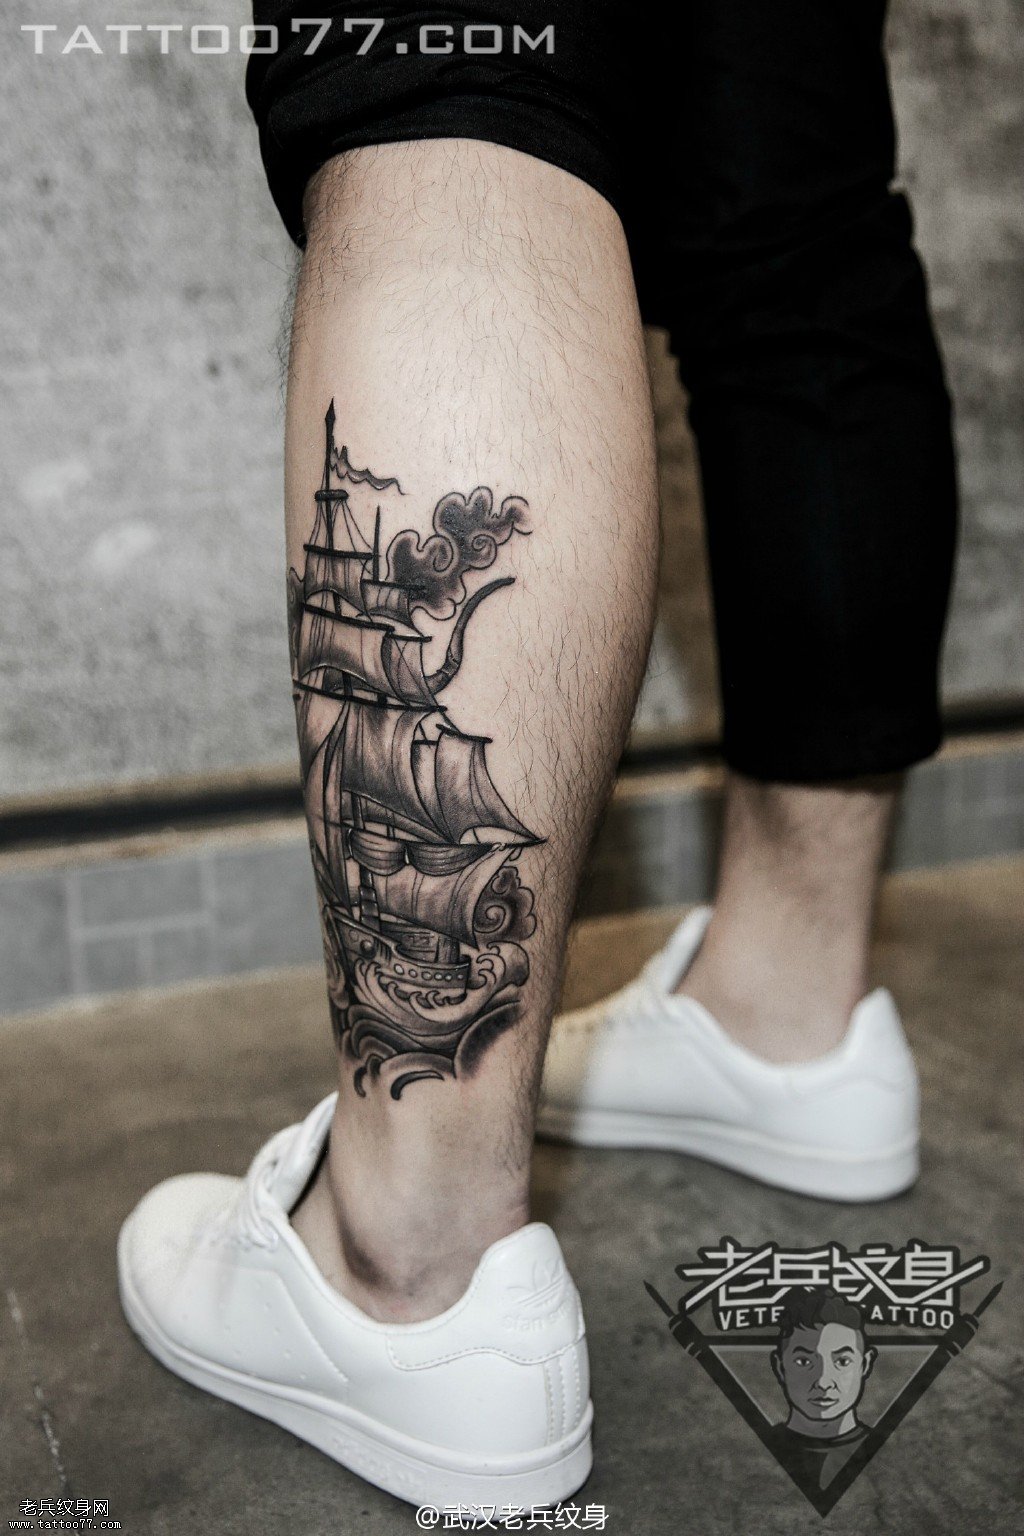   腿部帆船纹身图案作品